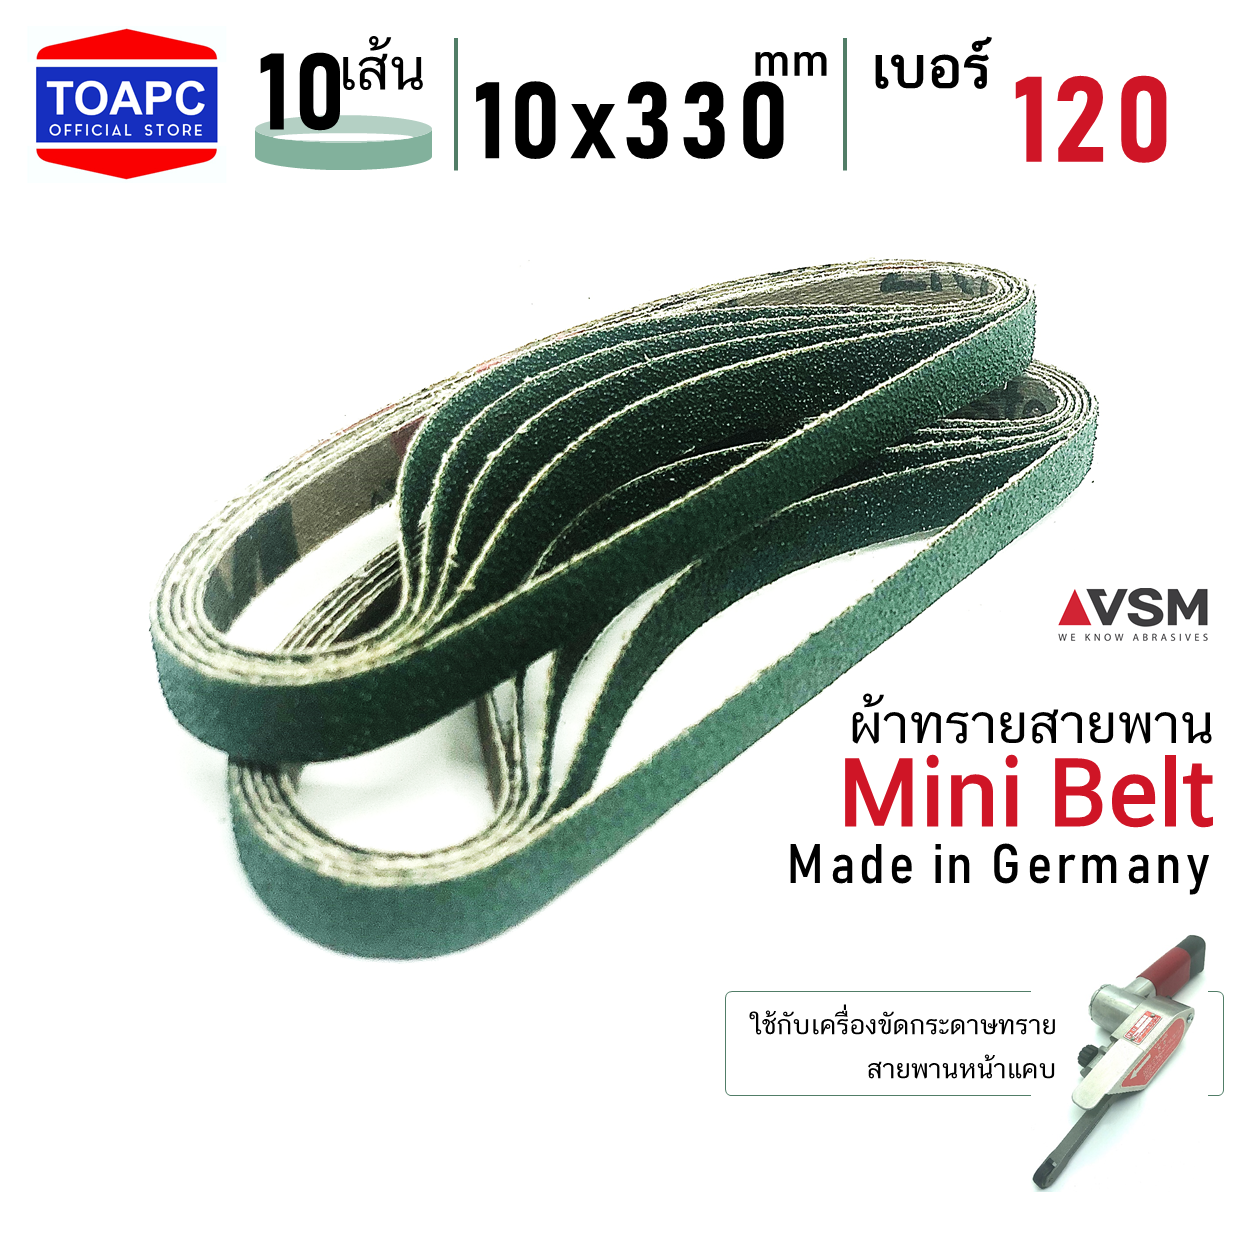 ผ้าทรายสายพาน เบอร์ 120 10x330 mm VSM Mini Belt จำนวน 10 เส้น